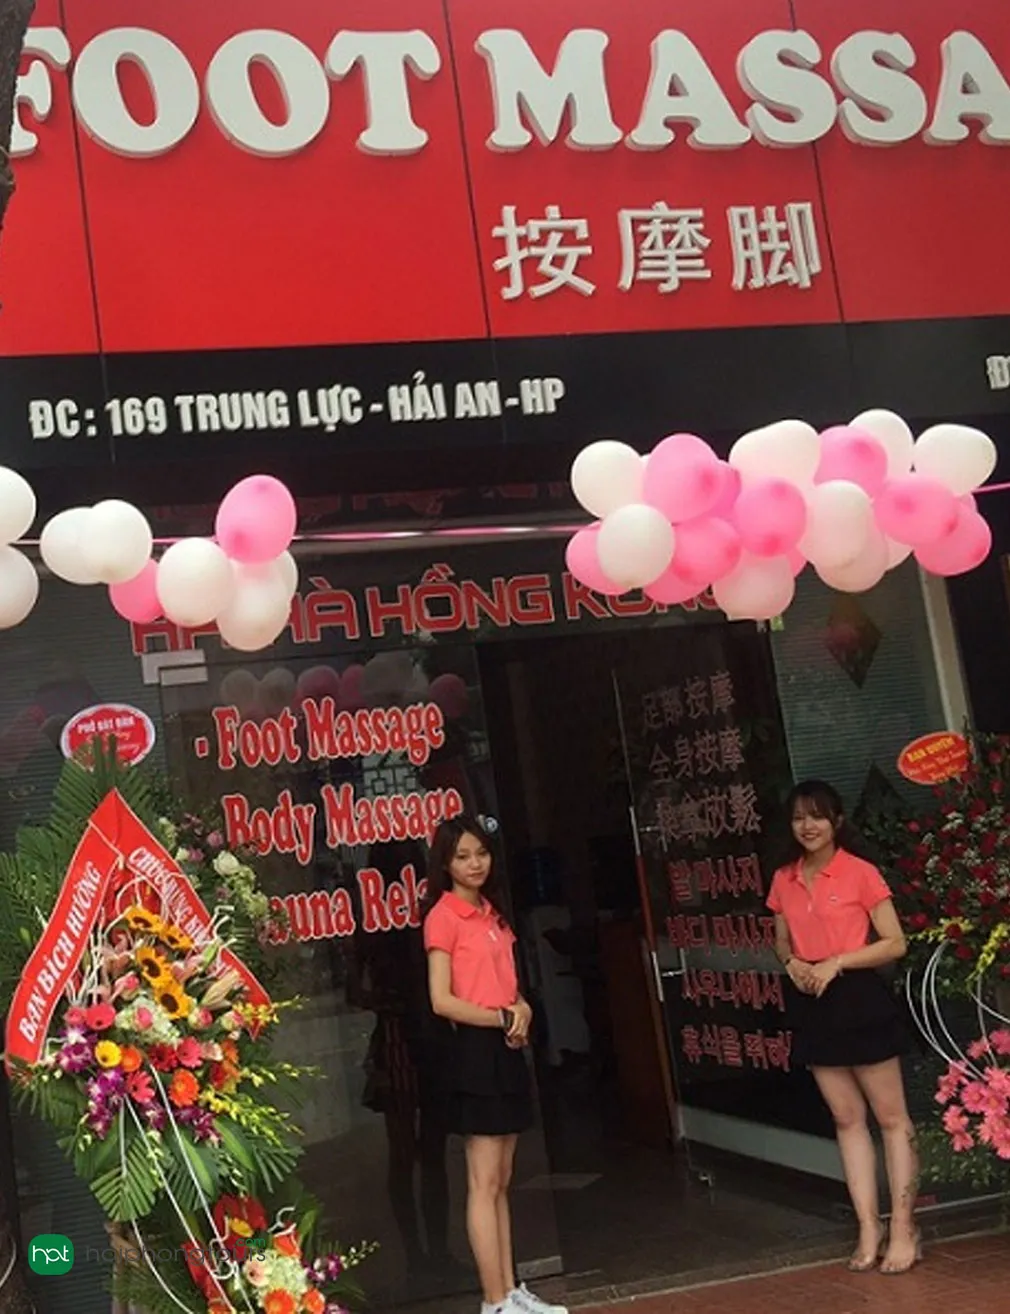 Tiệm Massage Hải Hà Hồng Kông